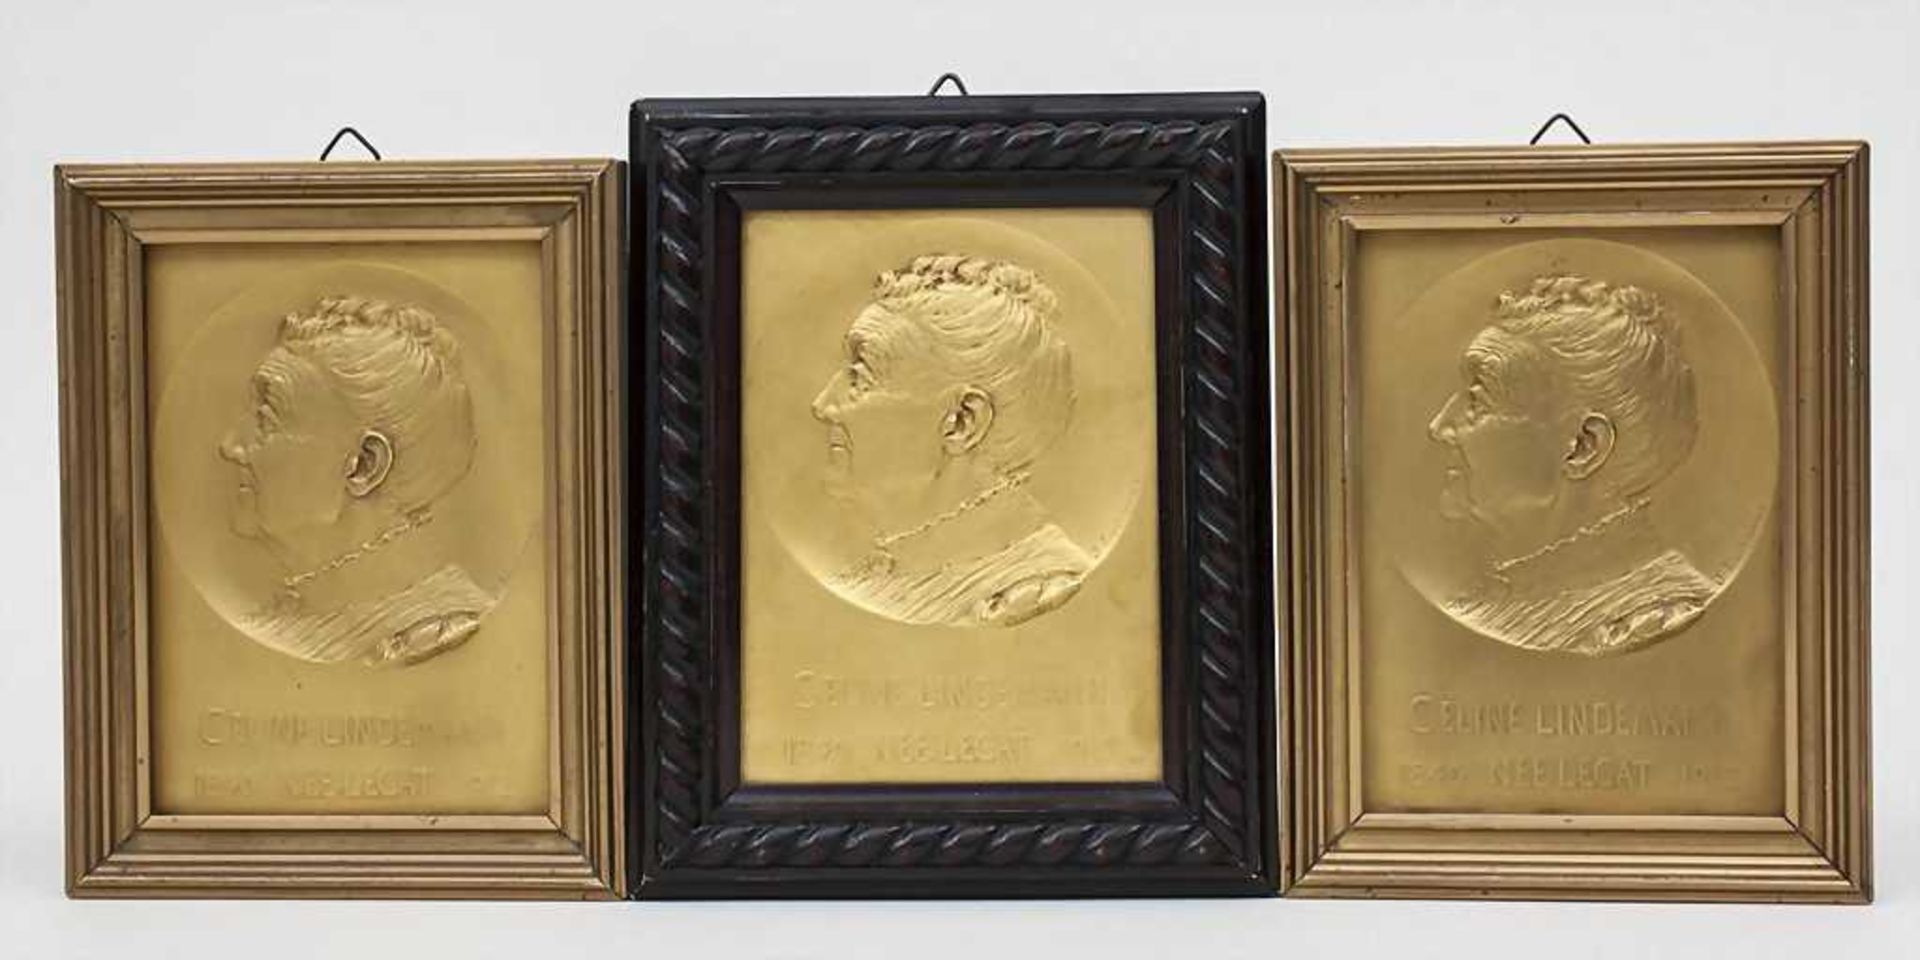 3 Porträts Celine Lindemann / Portraits Technik: Bronze, vergoldet, unterschiedliche Rahmungen,